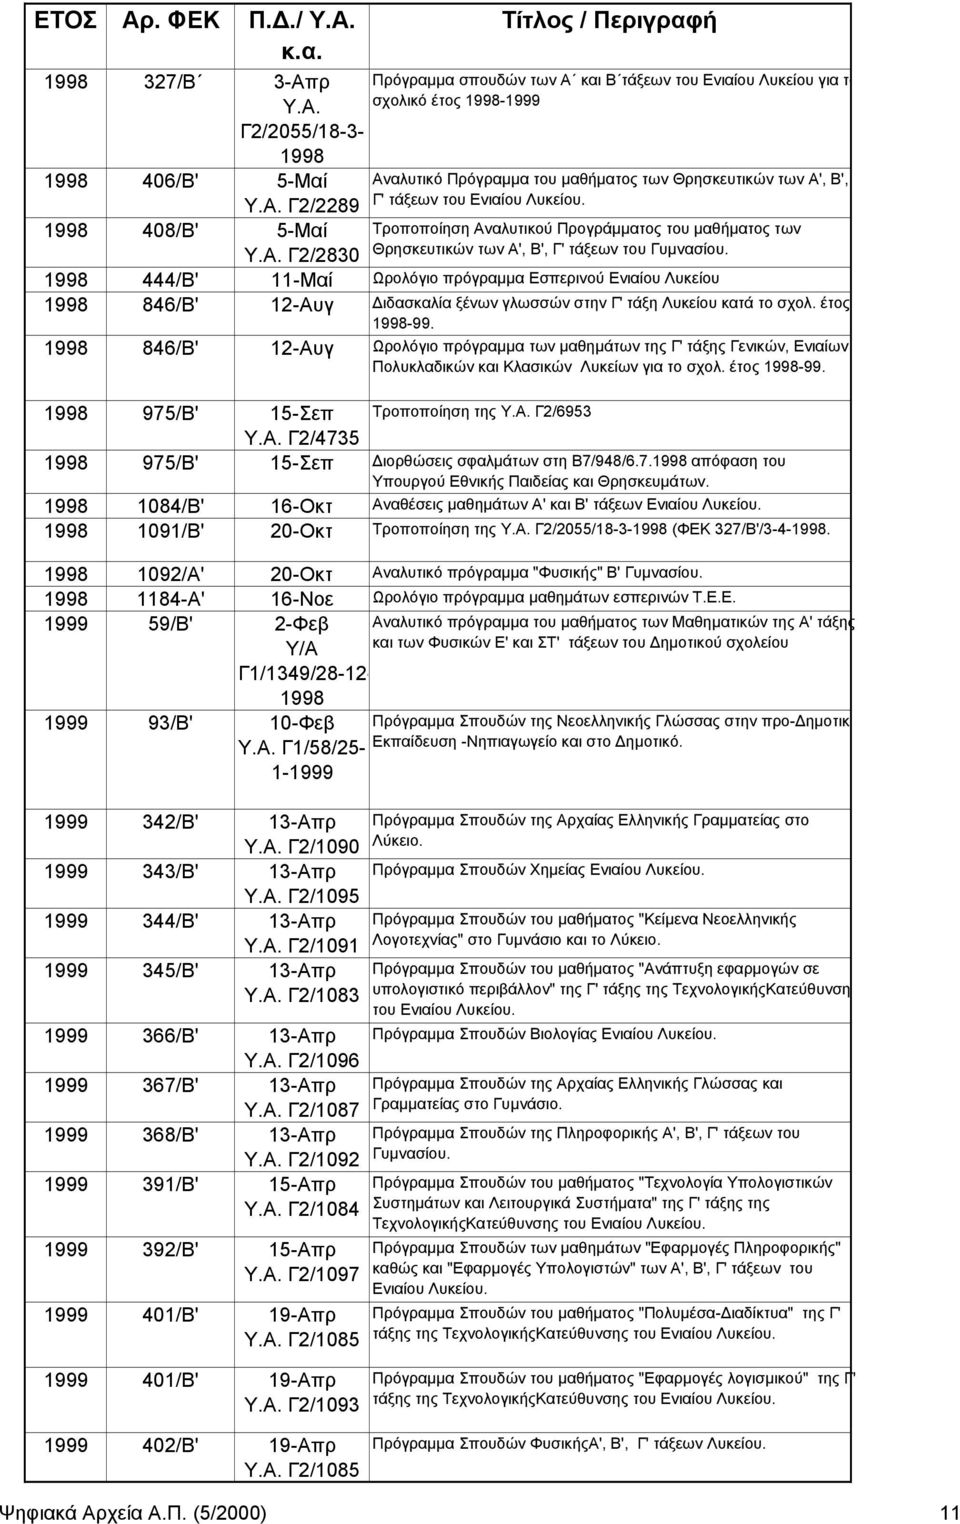 1998 444/Β' 11-Μαί Ωρολόγιο πρόγραμμα Εσπερινού Ενιαίου Λυκείου 1998 846/Β' 12-Αυγ ιδασκαλία ξένων γλωσσών στην Γ' τάξη Λυκείου κατά το σχολ. έτος 1998-99.